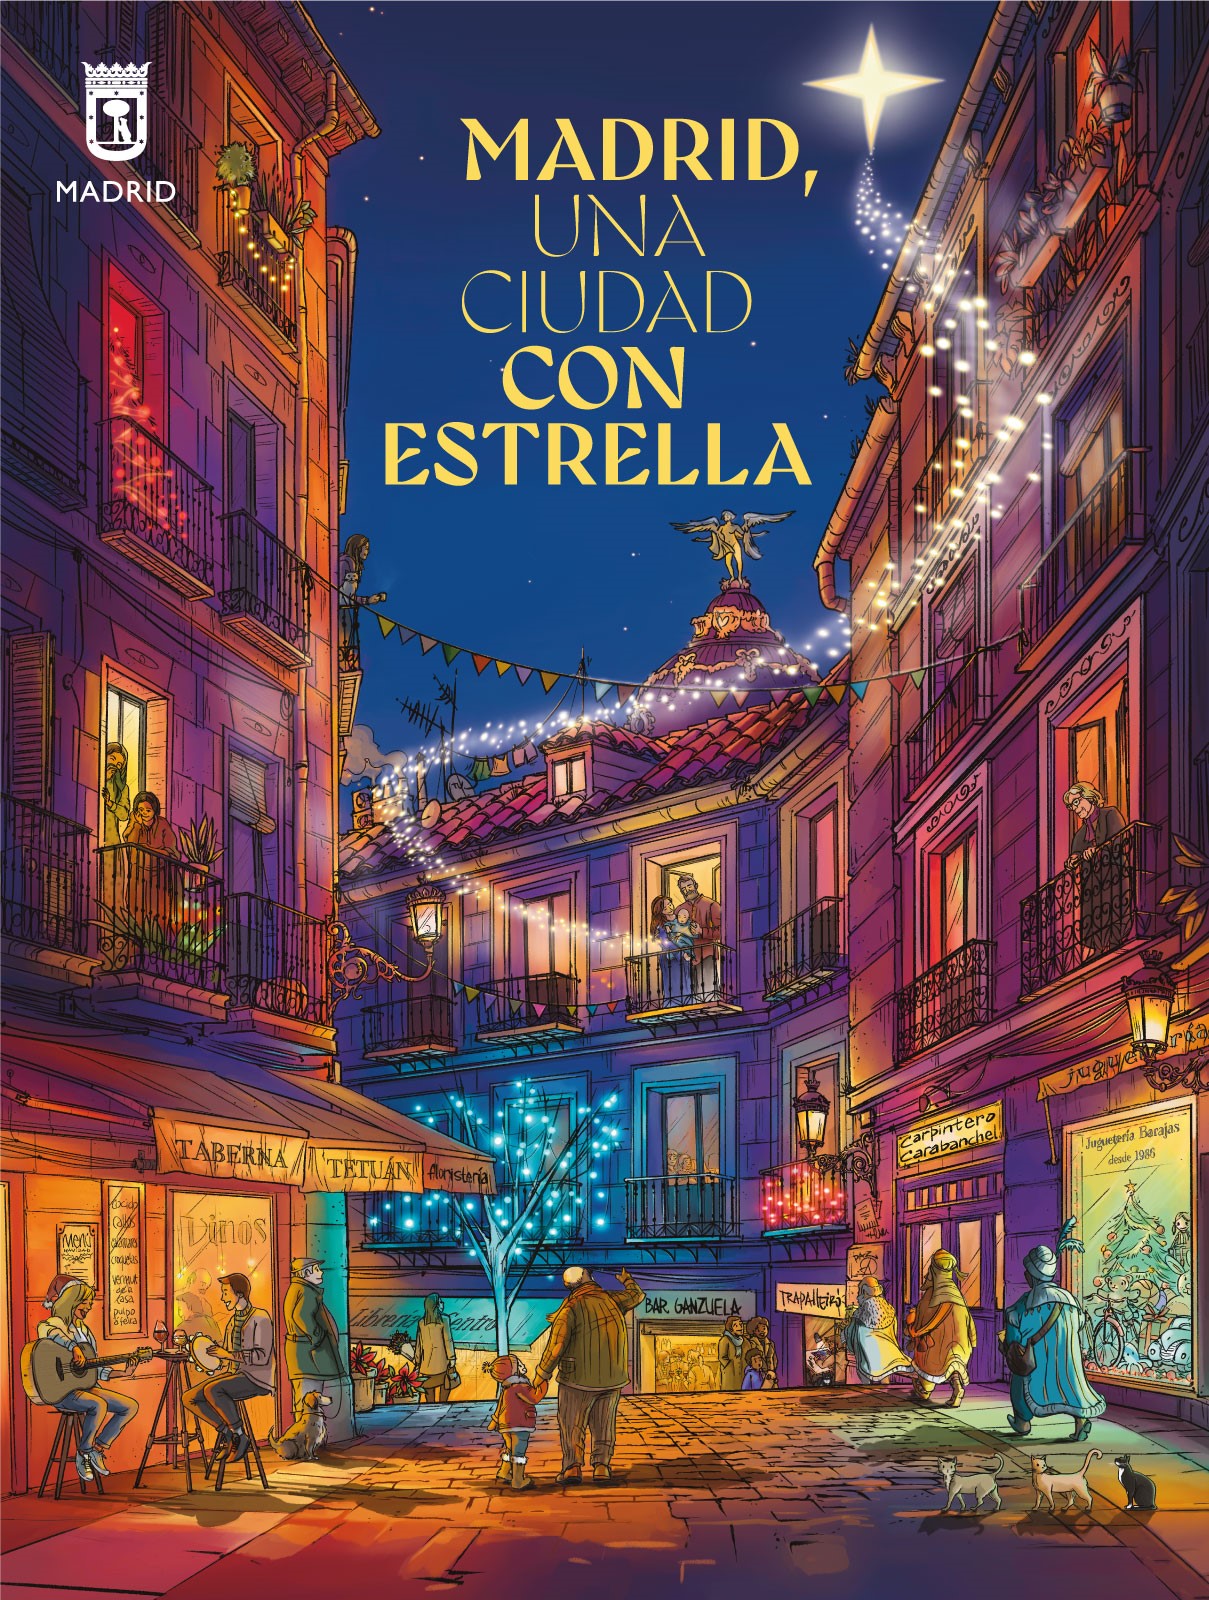 Nuevo cartel de la Navidad en Madrid diseñado por el ilustrador Polinho Trapalleiro 